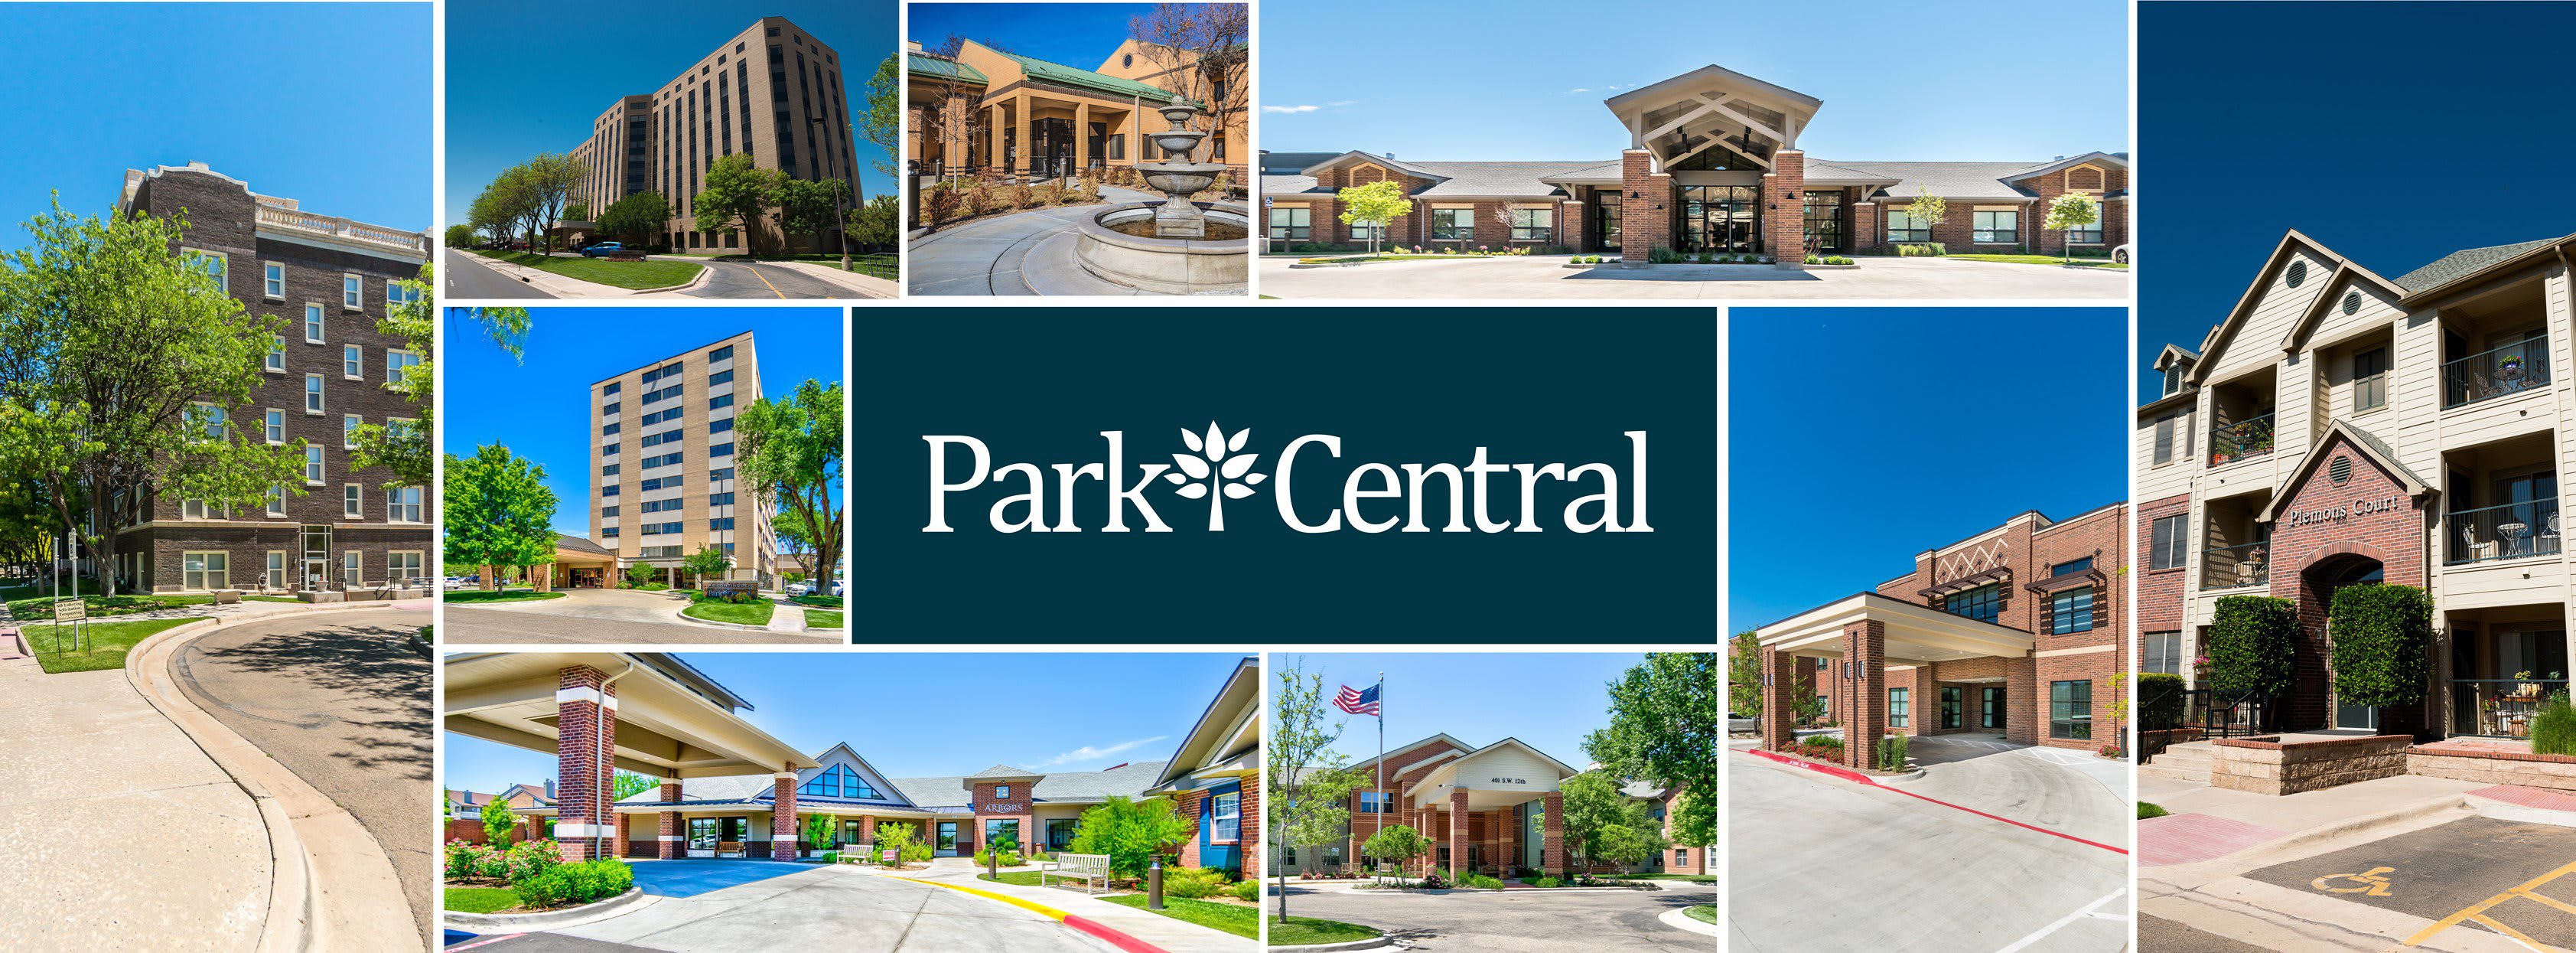 Park Central Retirement Community